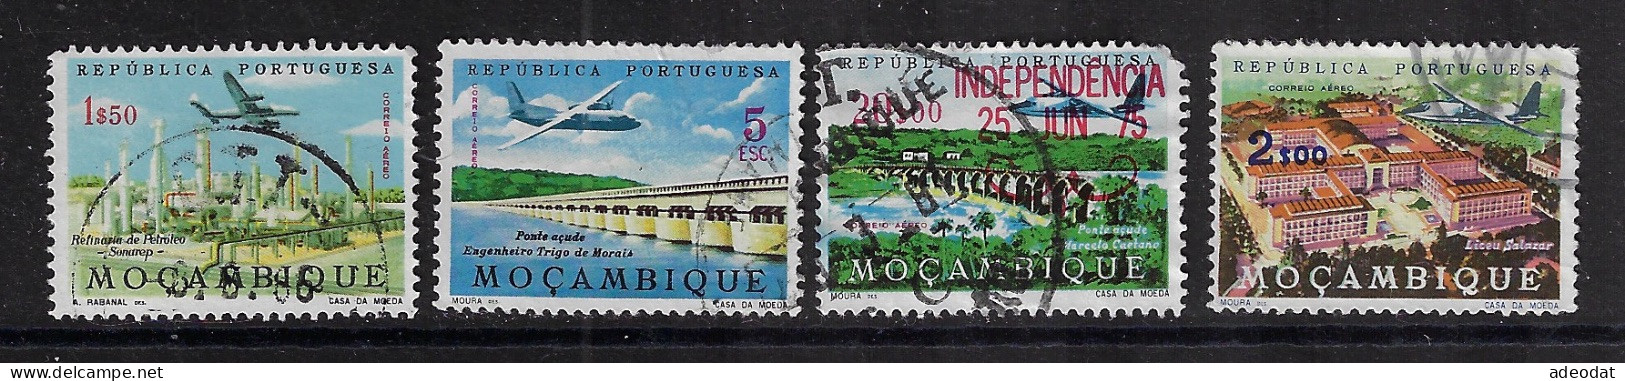 MOZAMBIQUE  1963,1975  SCOTT#C29,C30,C33,C38  USED  CV  $1.10 - Mozambique